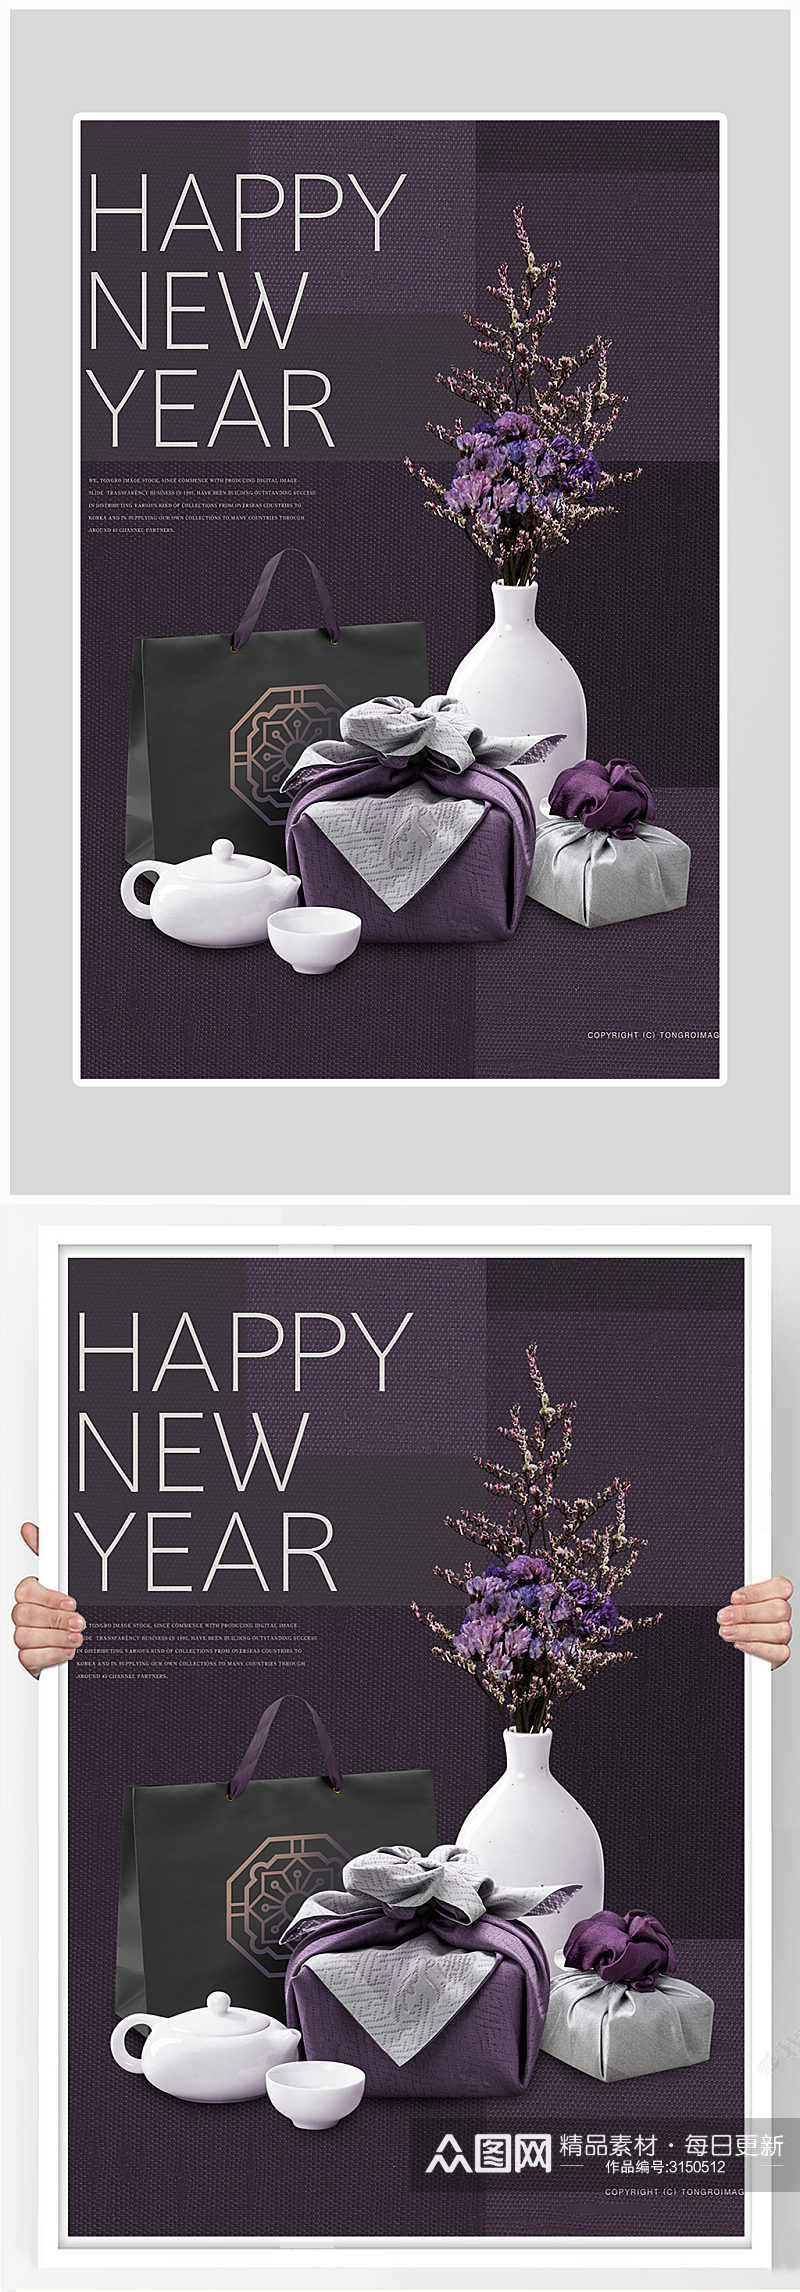 创意大气新年狂欢礼物海报设计素材